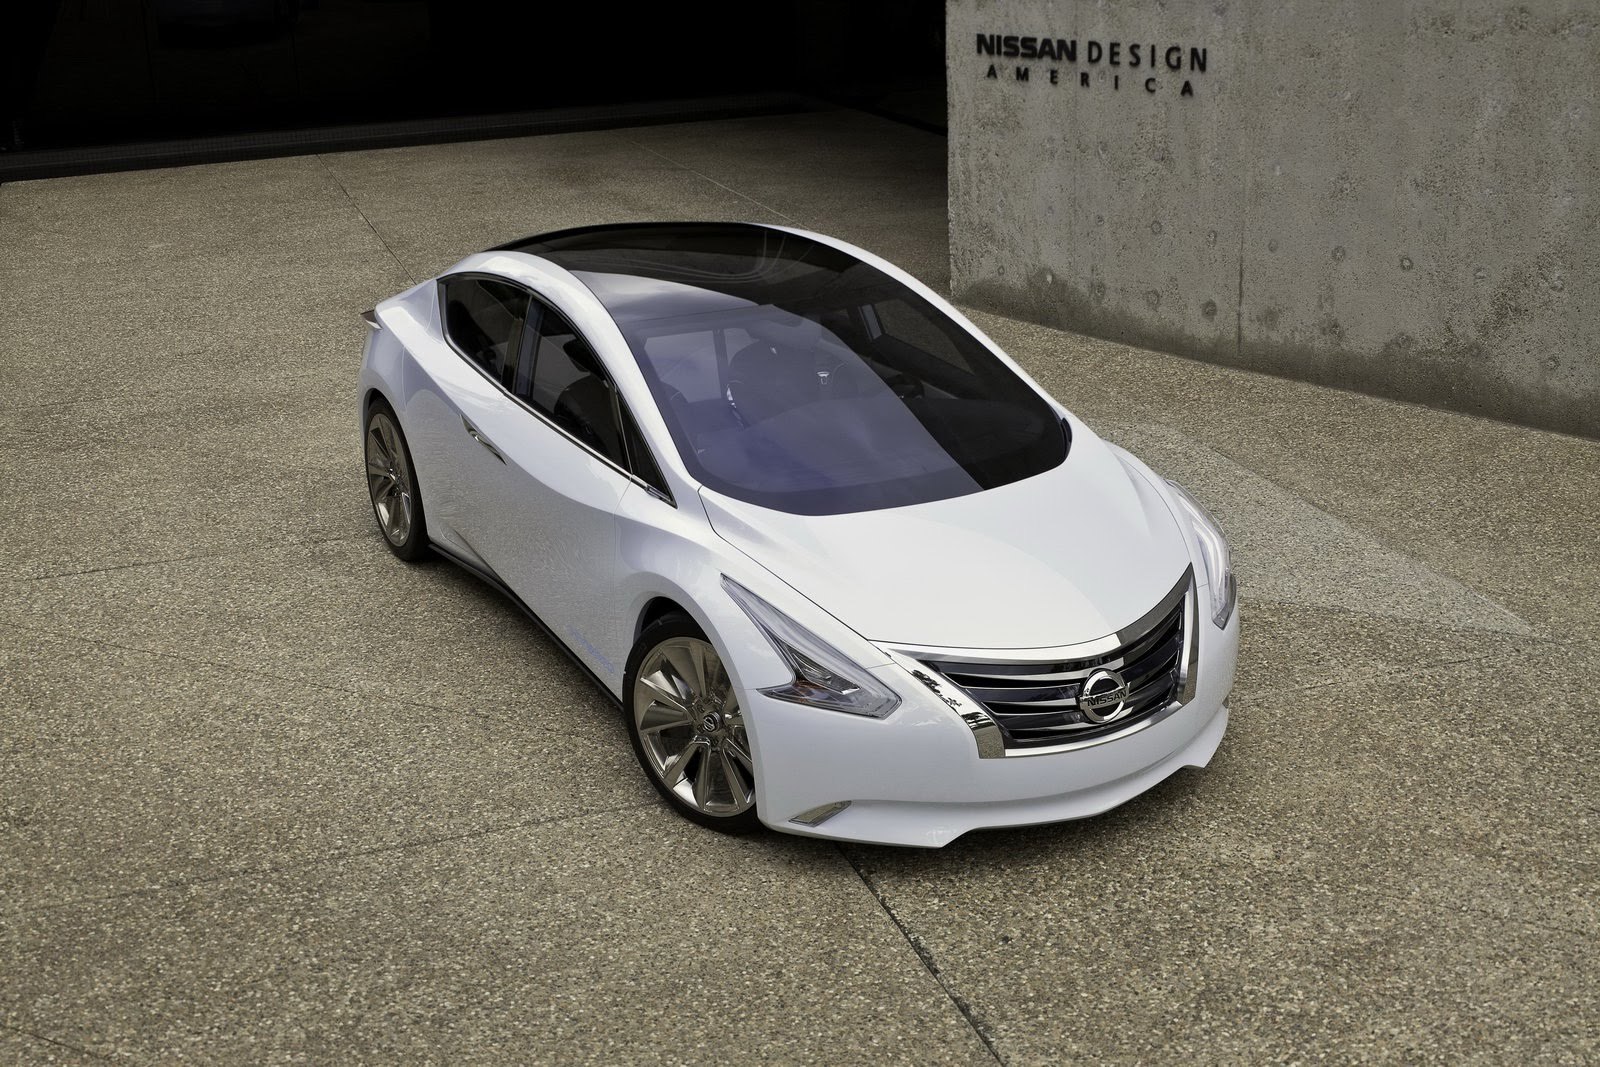 Nissan Ellure este teoretic doar un studiu de design, dar s-ar putea sa prefigureze un model de serie